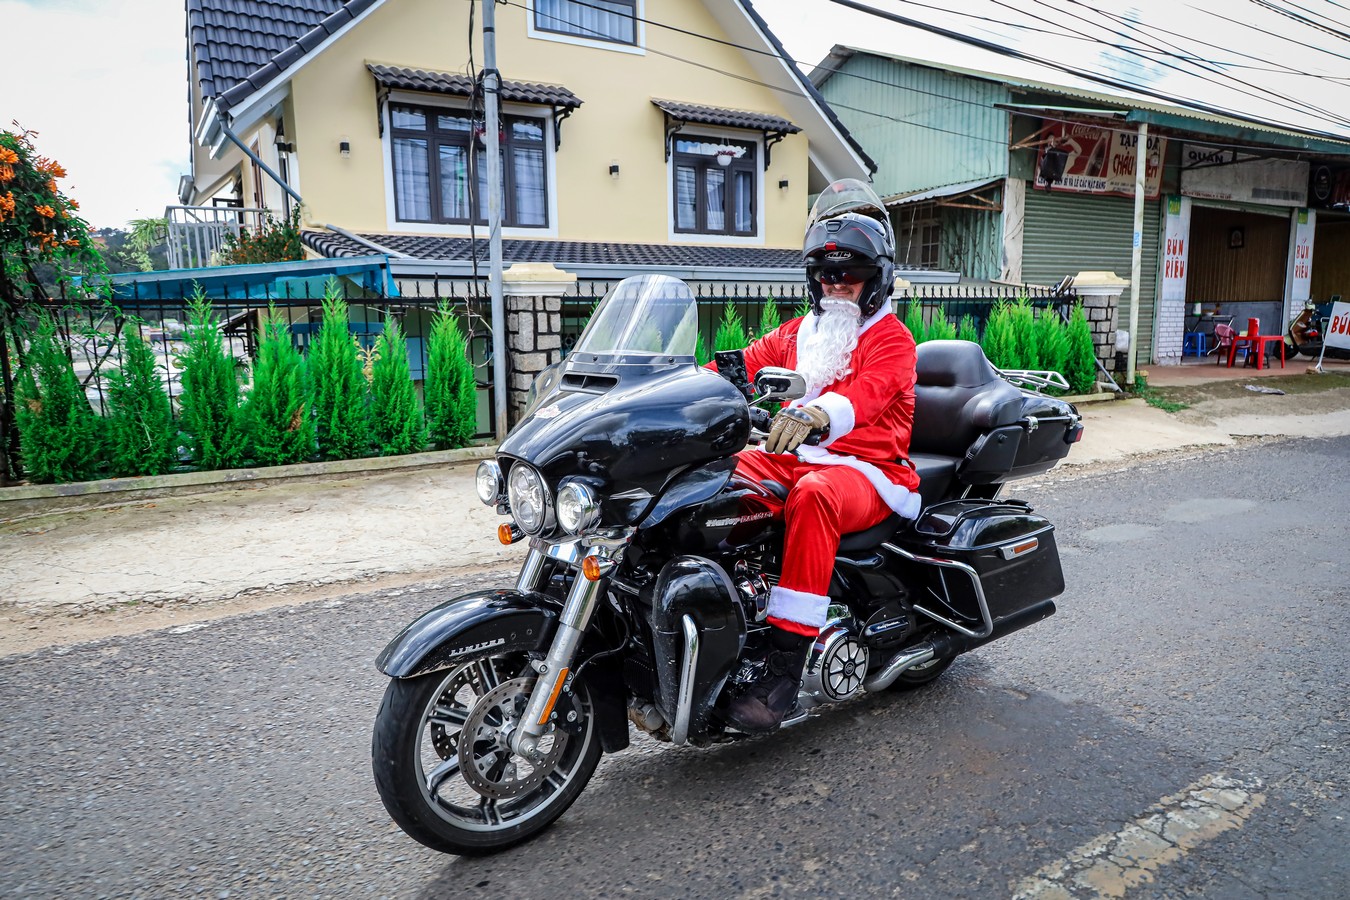 Christmas Charity Ride 2020 – Hành trình thiện nguyện lớn nhất năm 2020 Hình ảnh ông già Noel chạy chiếc Harley-Davidson.jpg